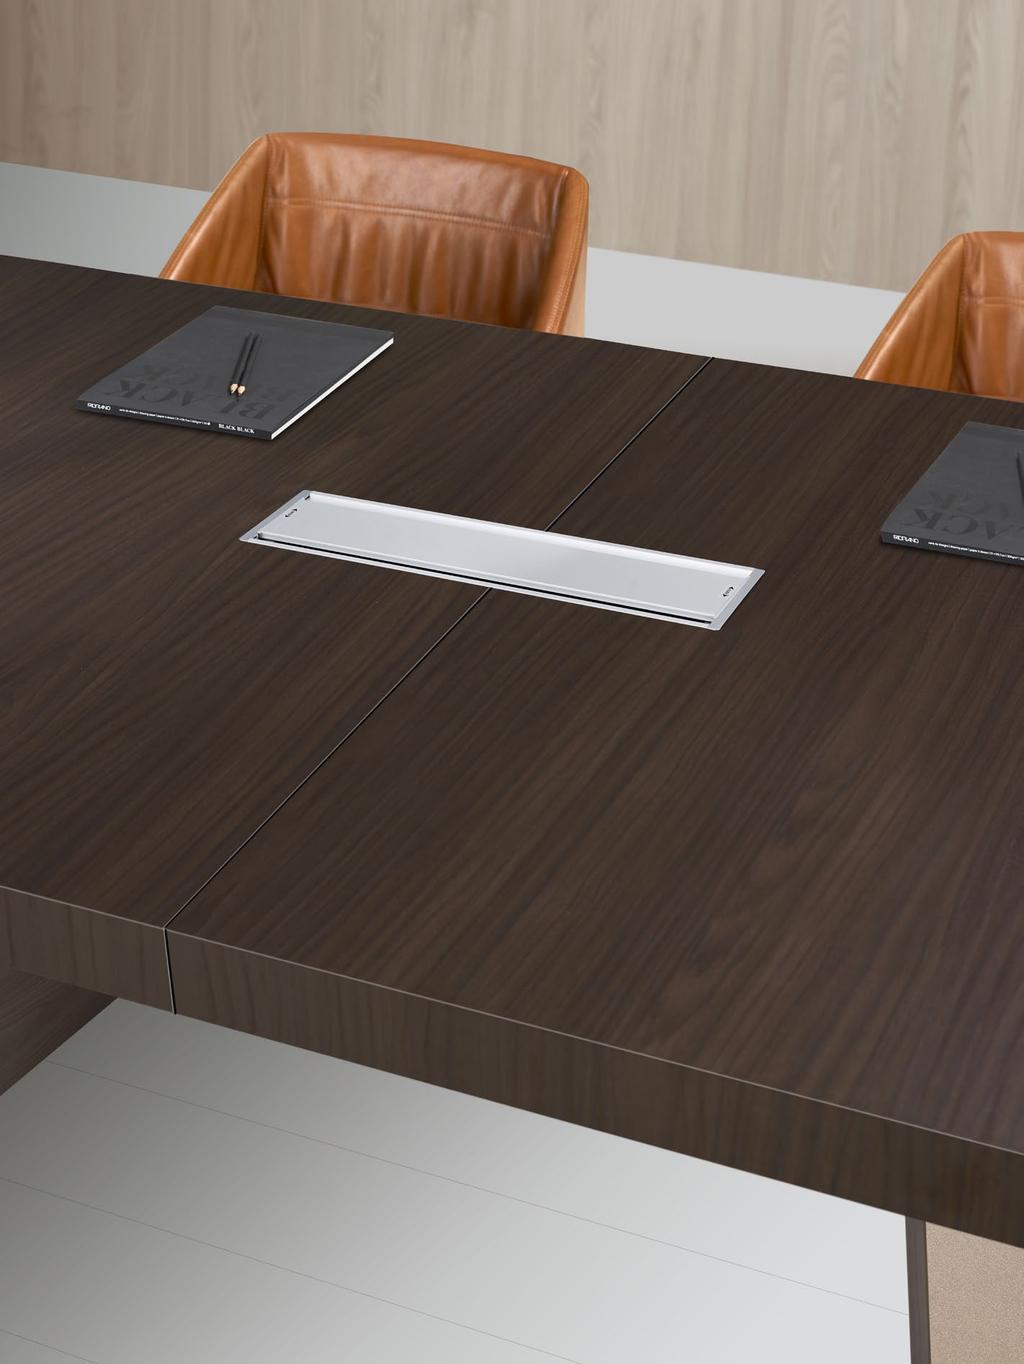 Il basamento dei tavoli meeting è ispezionabile rimuovendo i pannelli inseriti